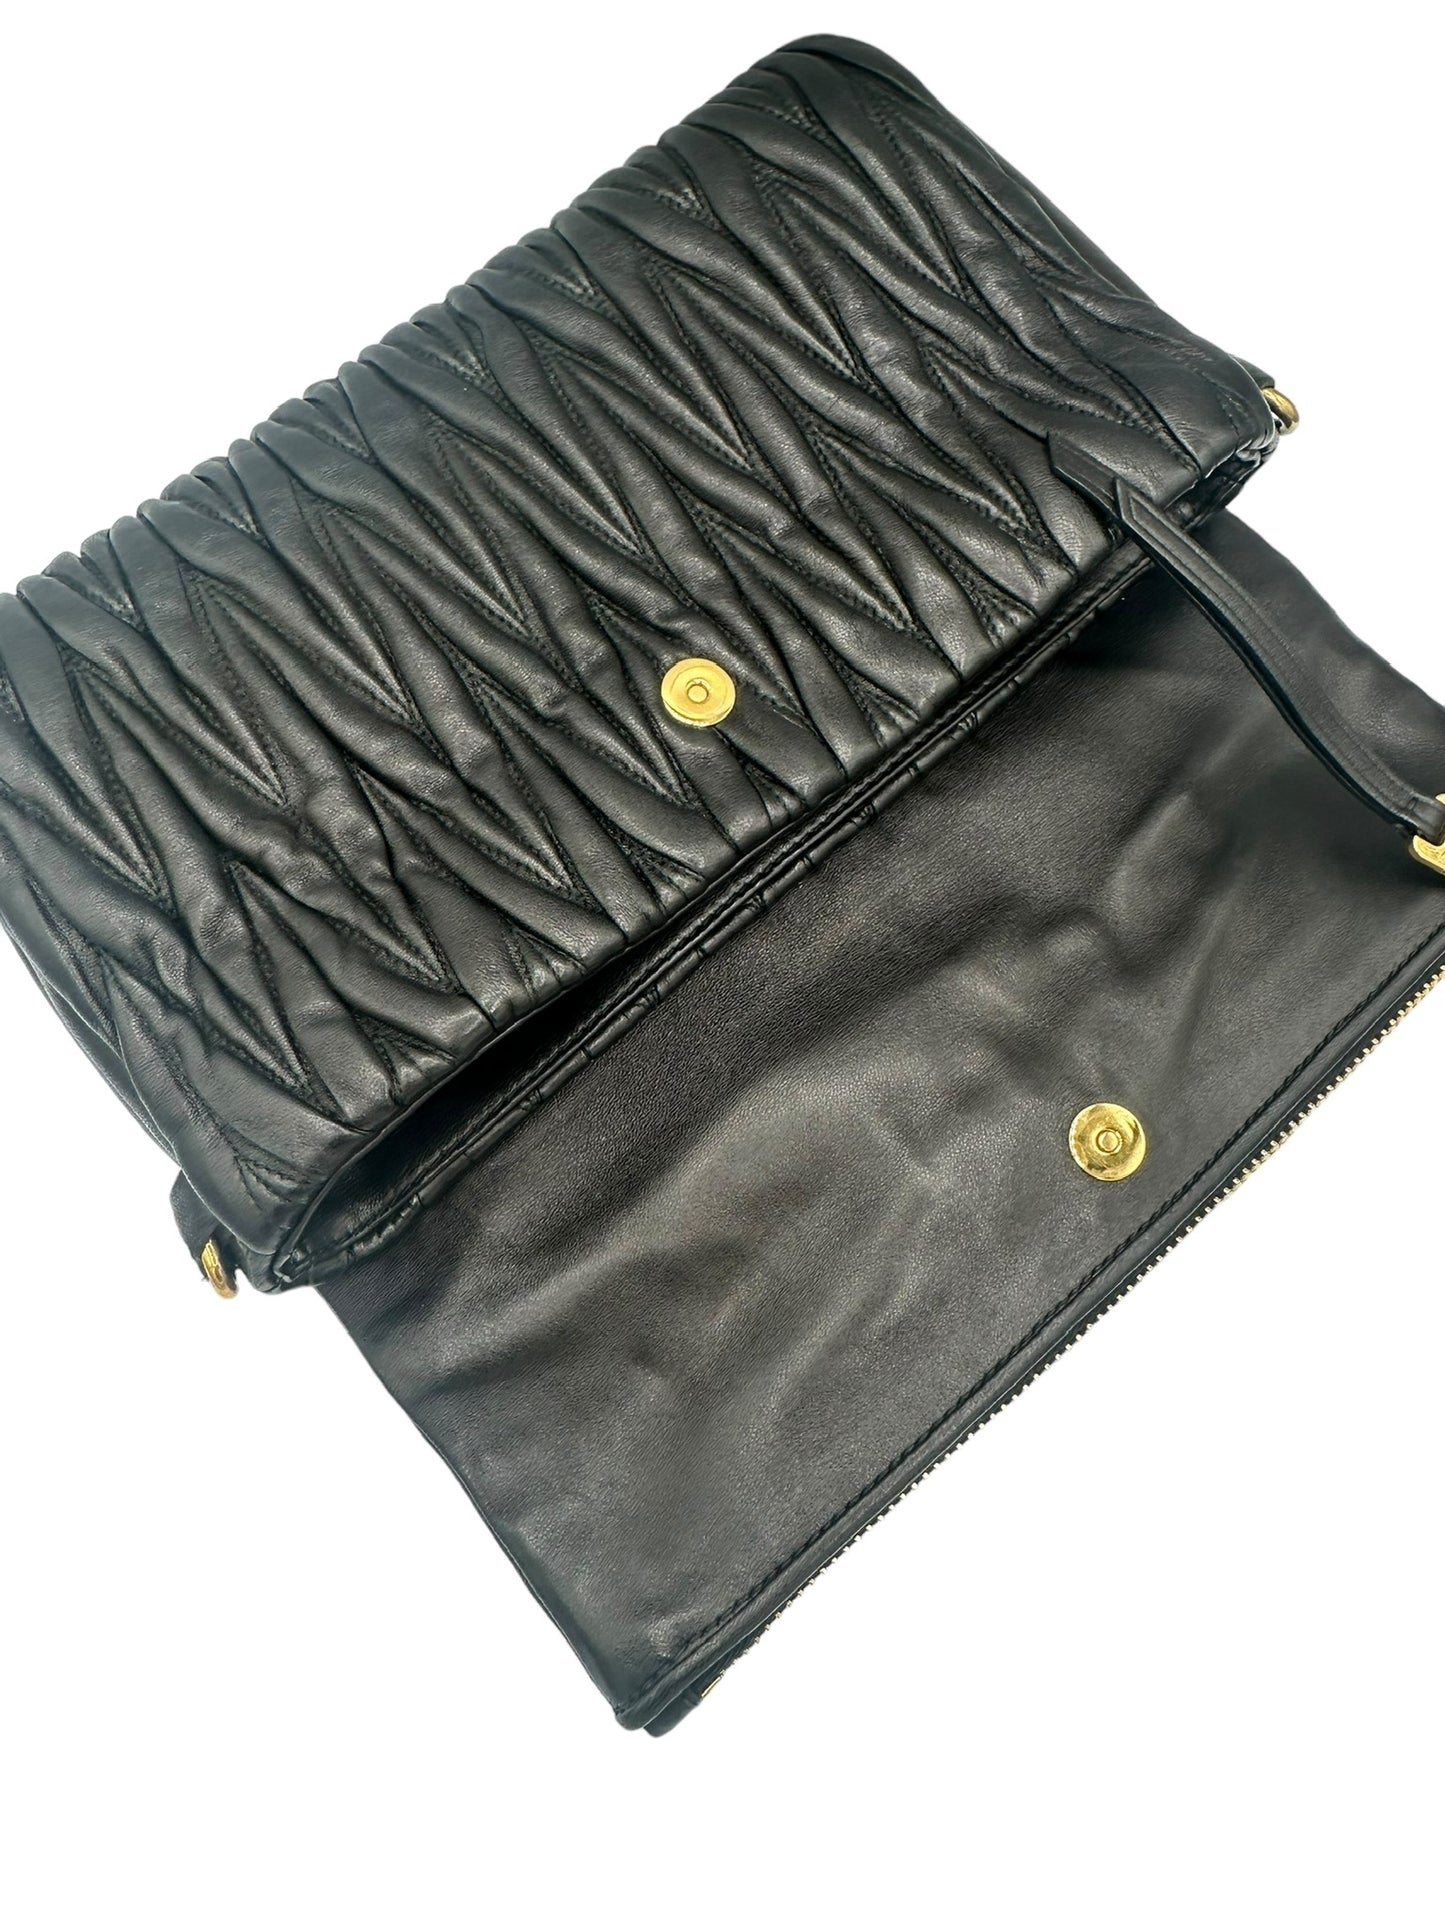 MIU MIU - Black Matelasse Leather Fold Over Clutch